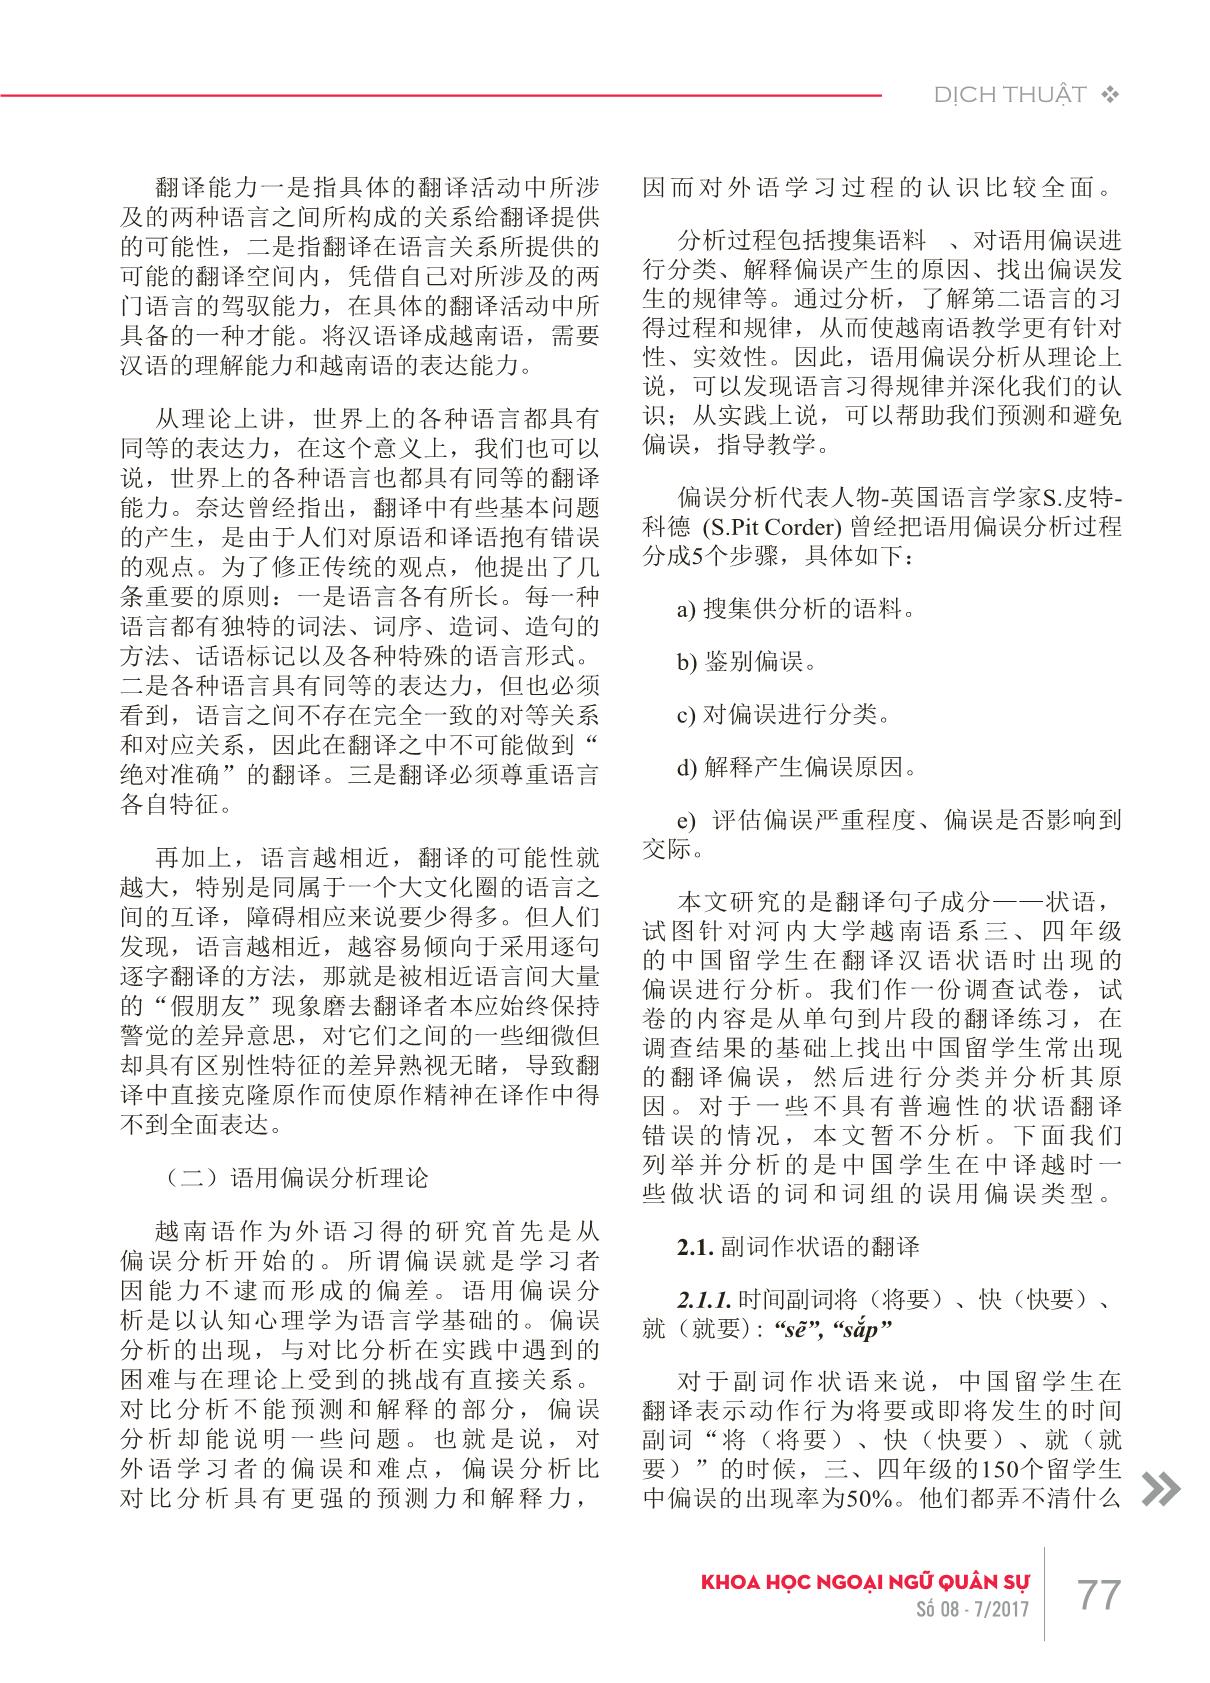 Phân tích lỗi của sinh viên Trung Quốc khi dịch trạng ngữ từ tiếng Trung Quốc sang tiếng Việt trang 2